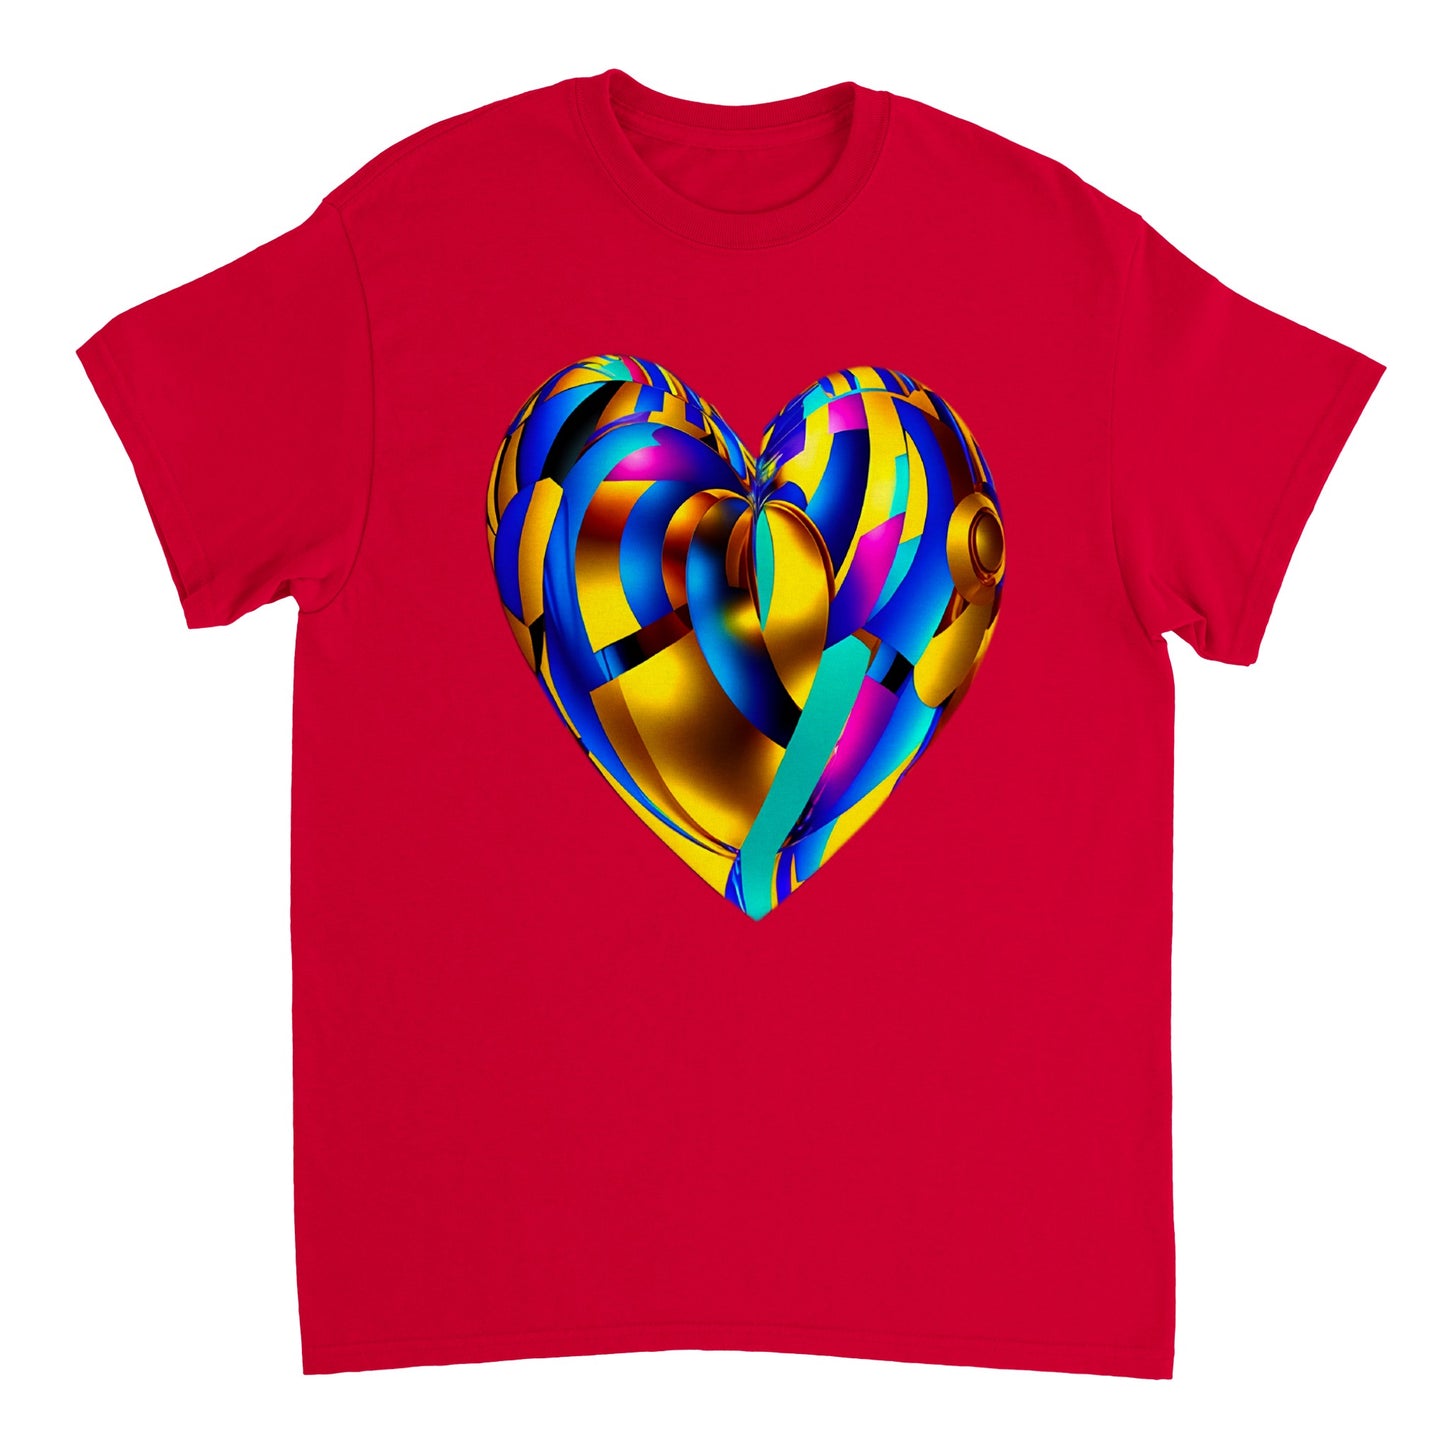 Love Heart - Heavyweight Unisex Crewneck T-shirt 63